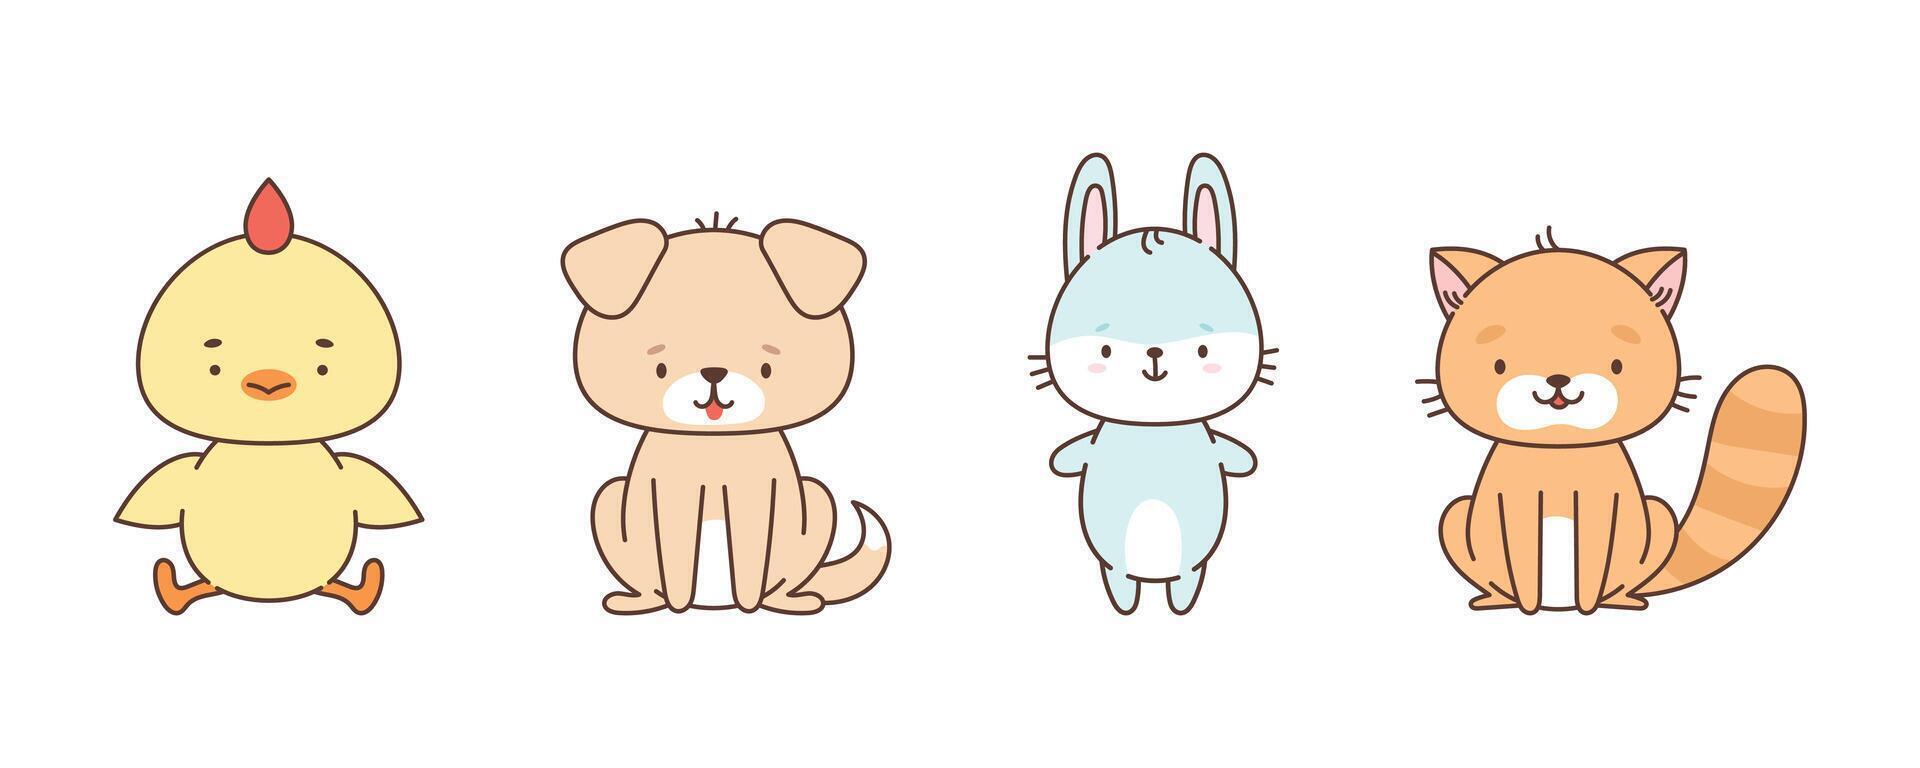 conjunto de linda granja animales pollo perro conejito gato. linda animales en kawaii estilo. dibujos para niños. vector ilustración